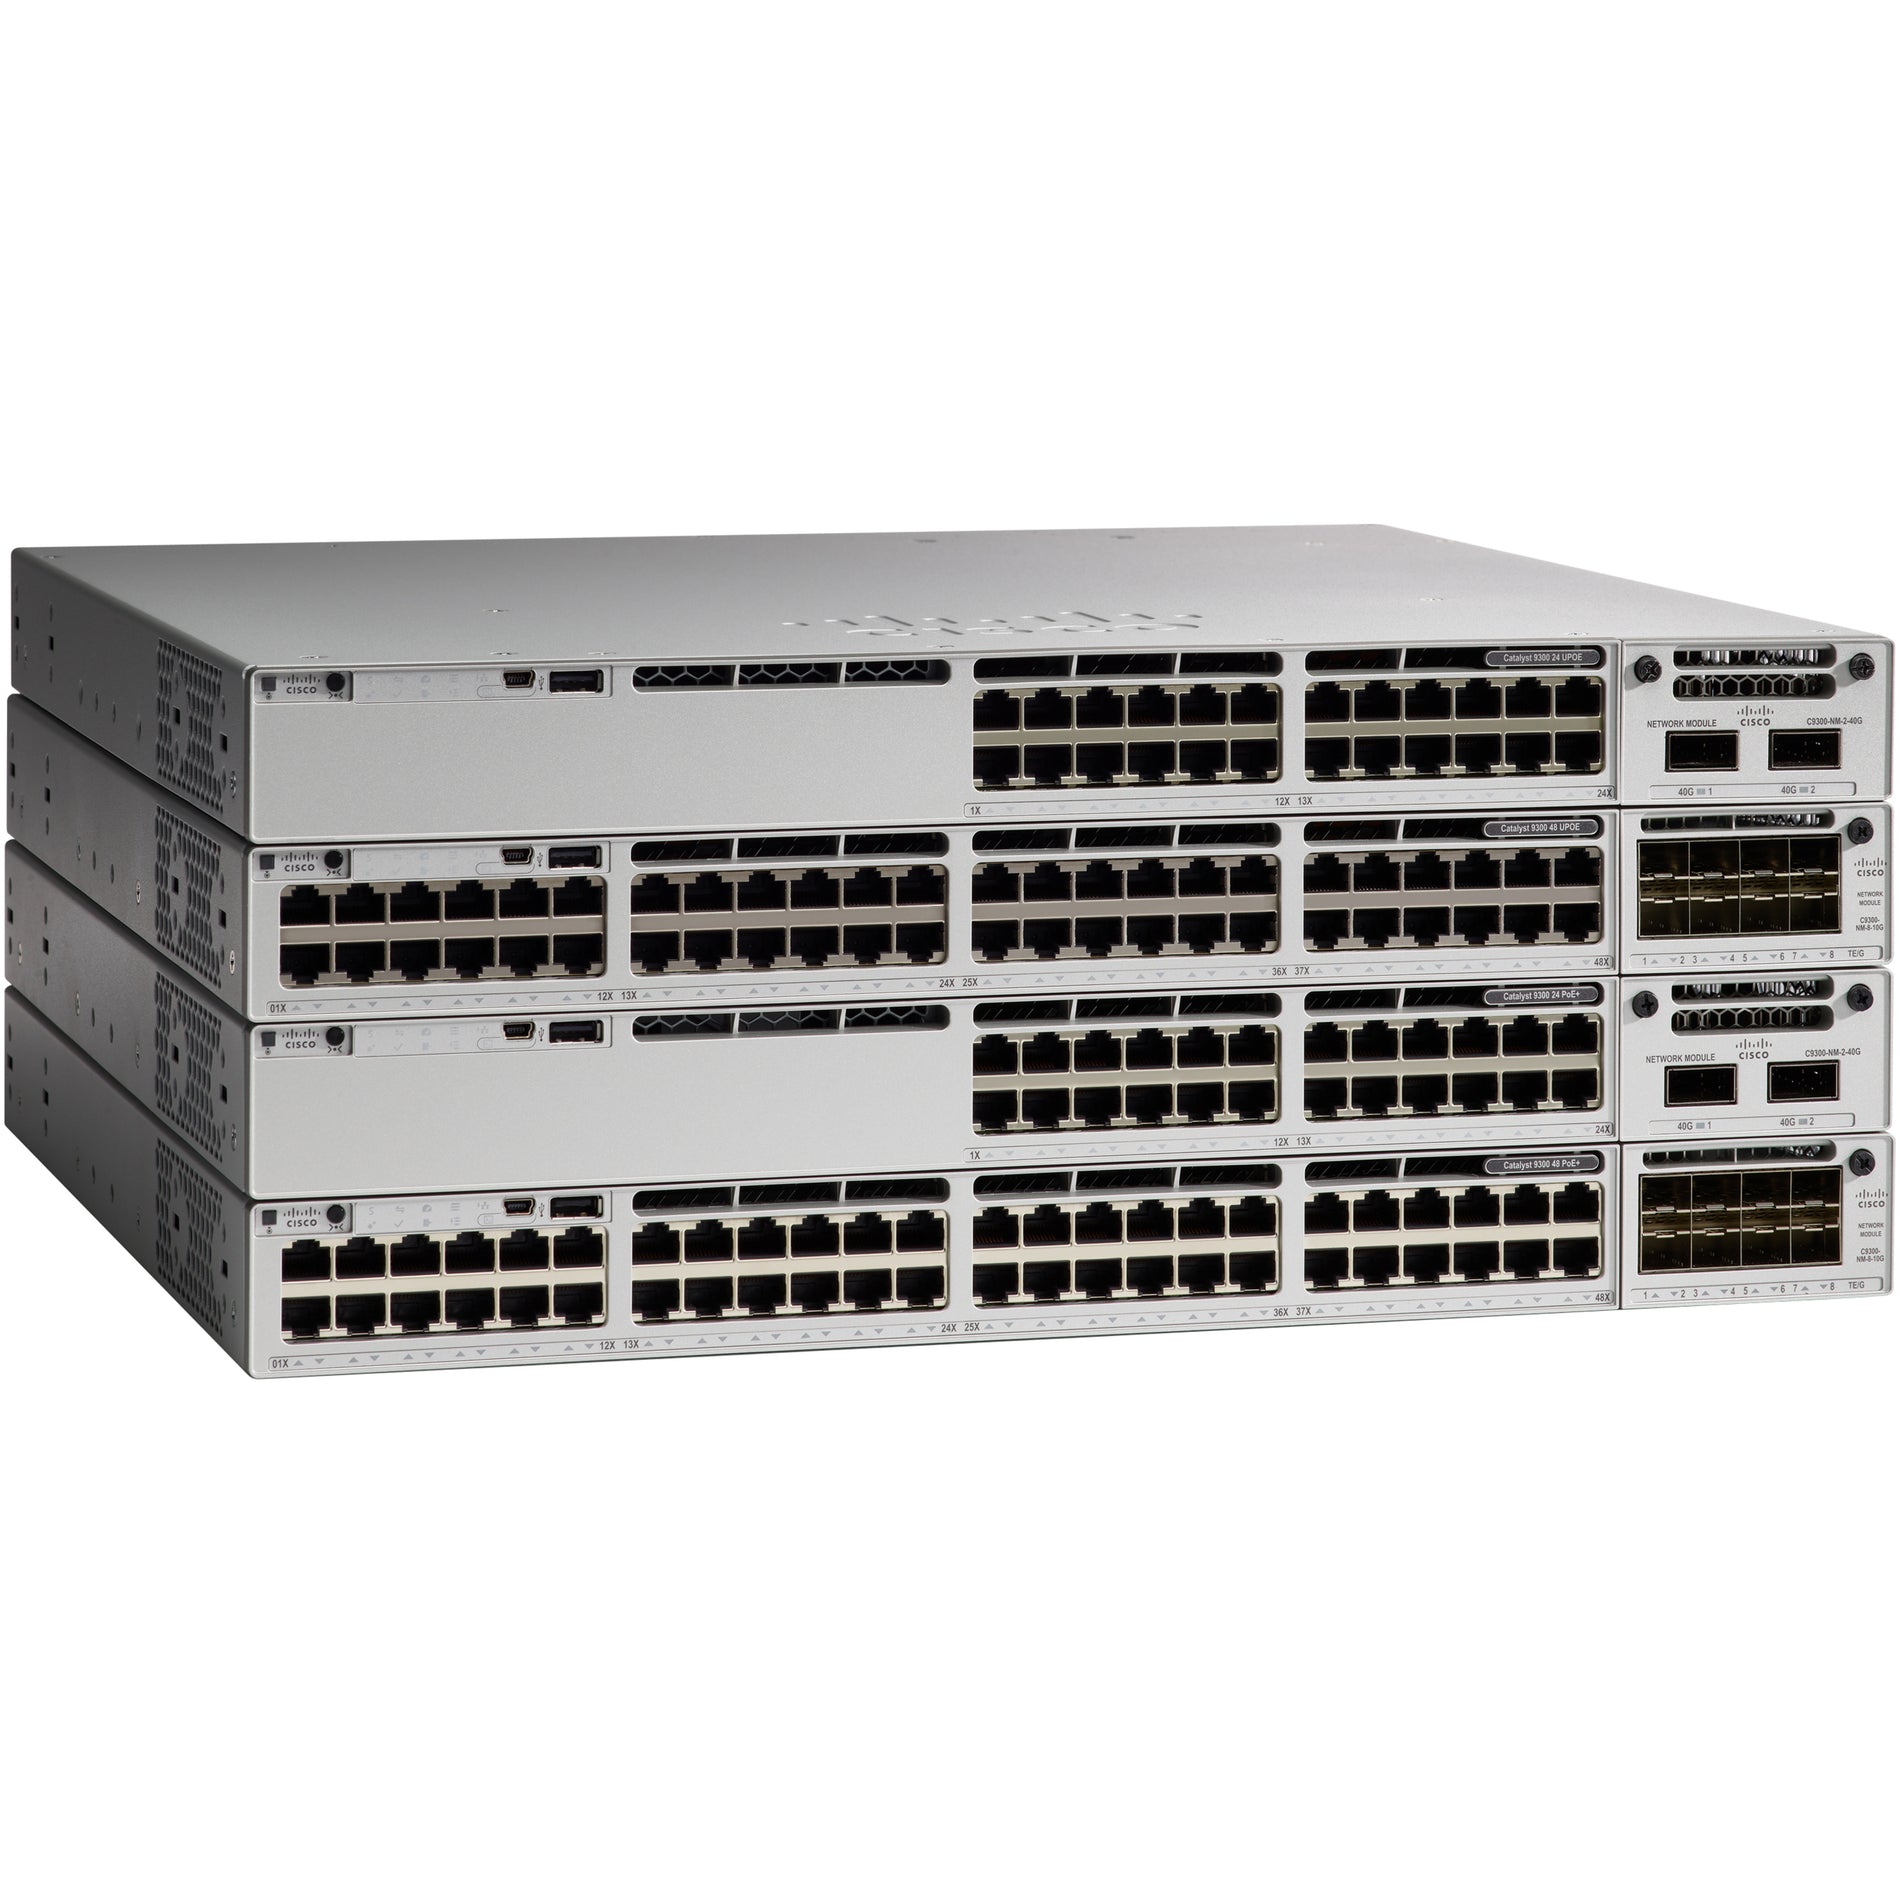 思科 C9300-48UXM-A Catalyst 以太网交换机，48 x 千兆以太网网络，电源供应，可管理  品牌名称：思科 (Cisco)